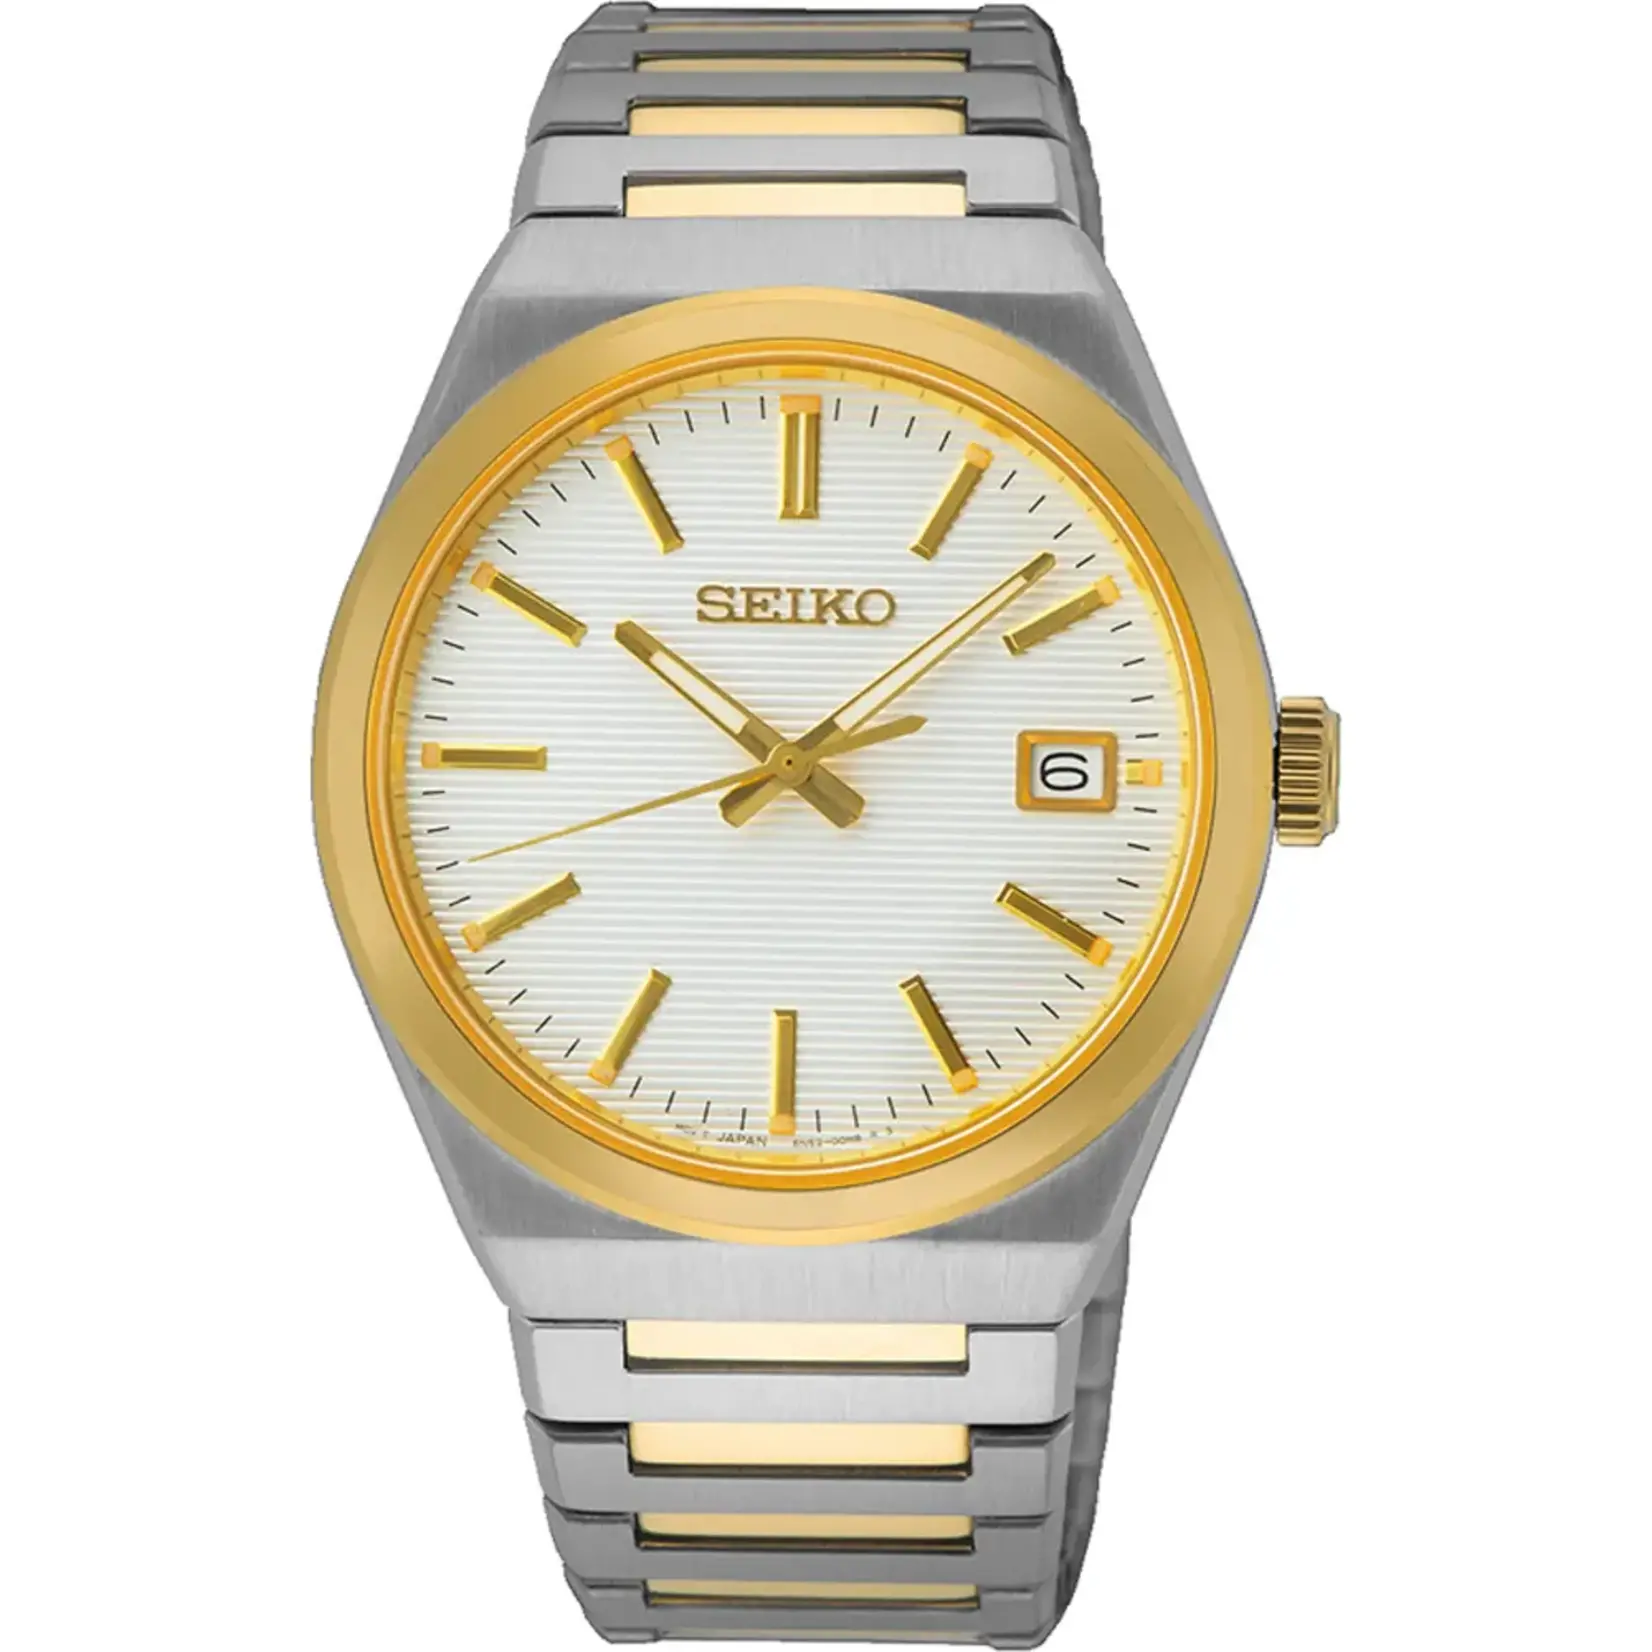 Seiko Seiko heren horloge sur558p1